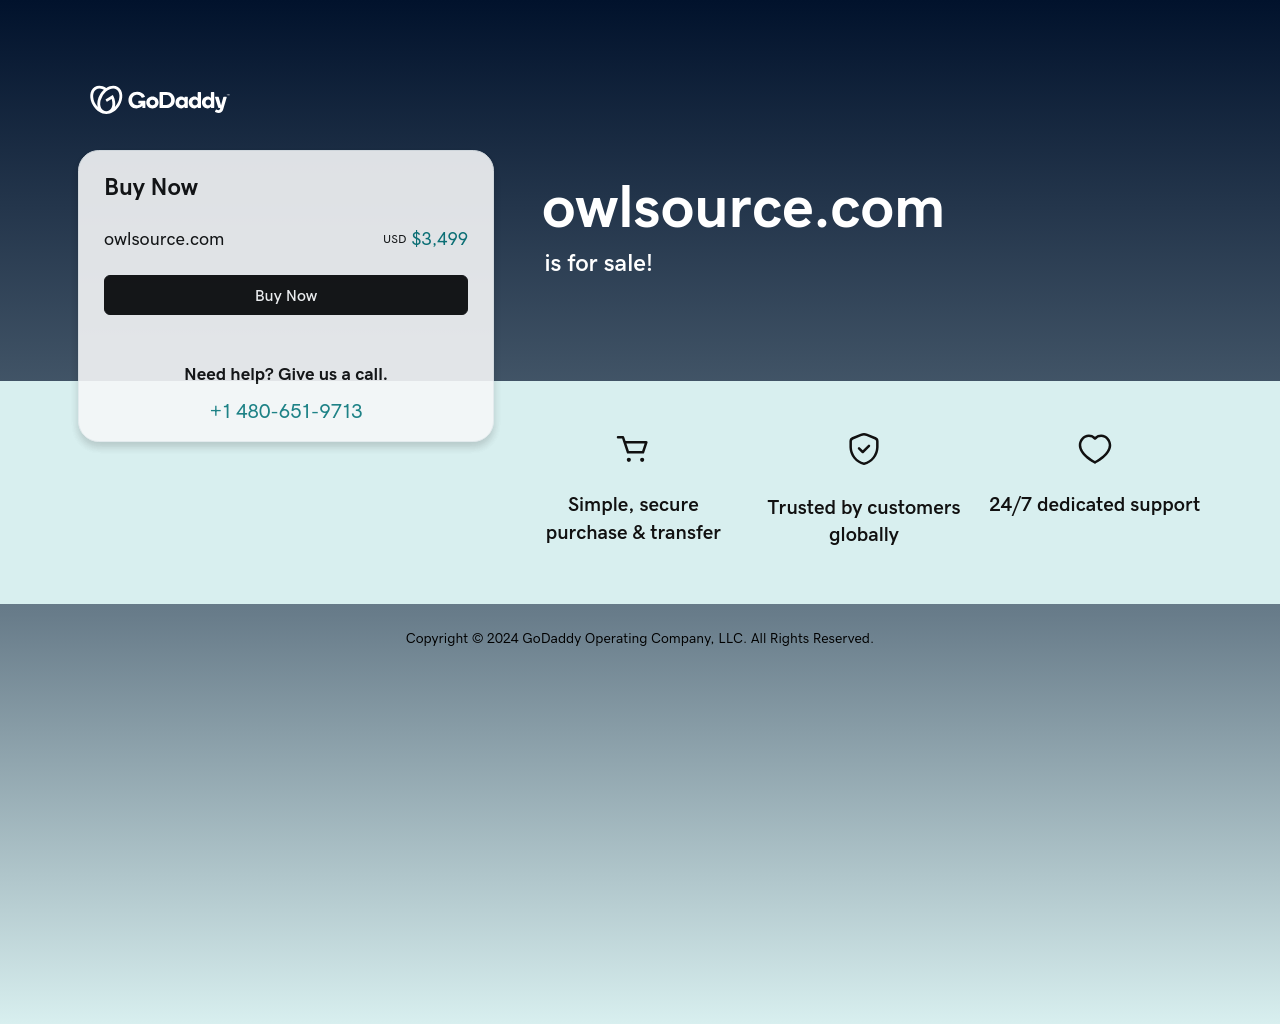 owlsource.com